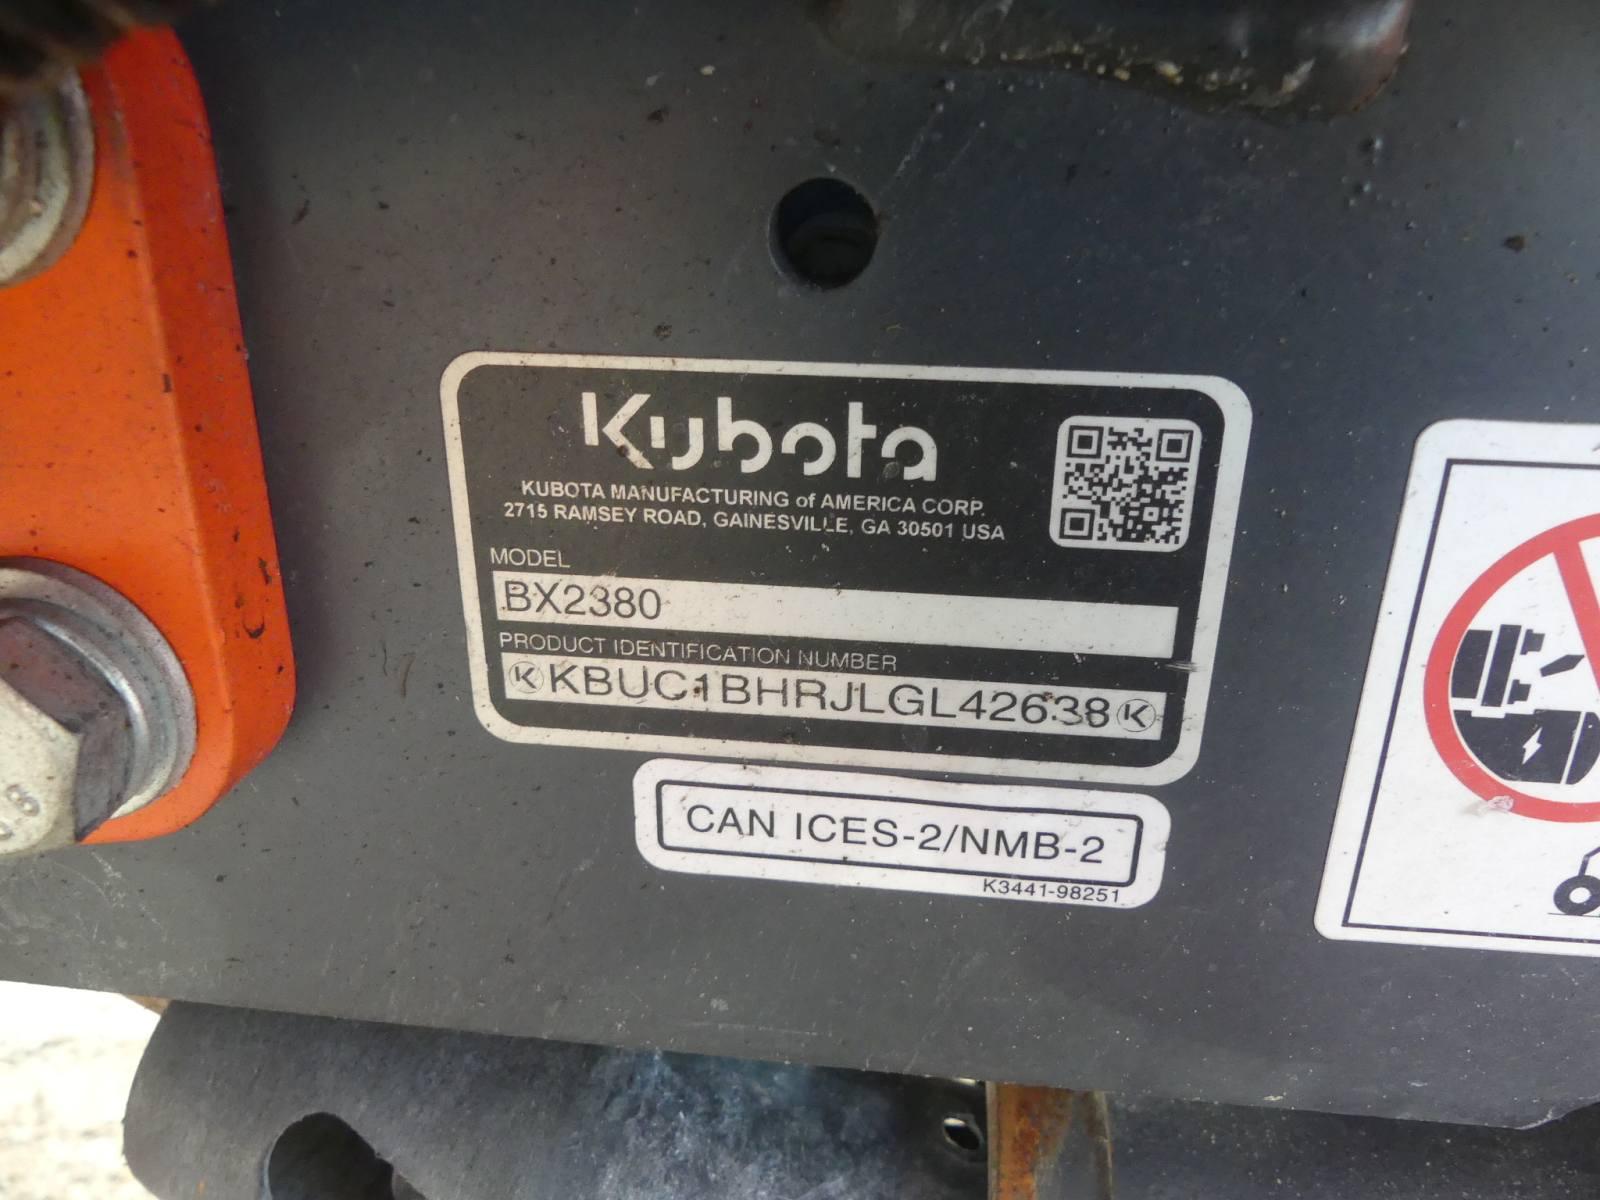 2020 Kubota BX2380 MFWD Tractor, s/n KBUC1BHRJLGL42638: Rollbar, LA344 Load